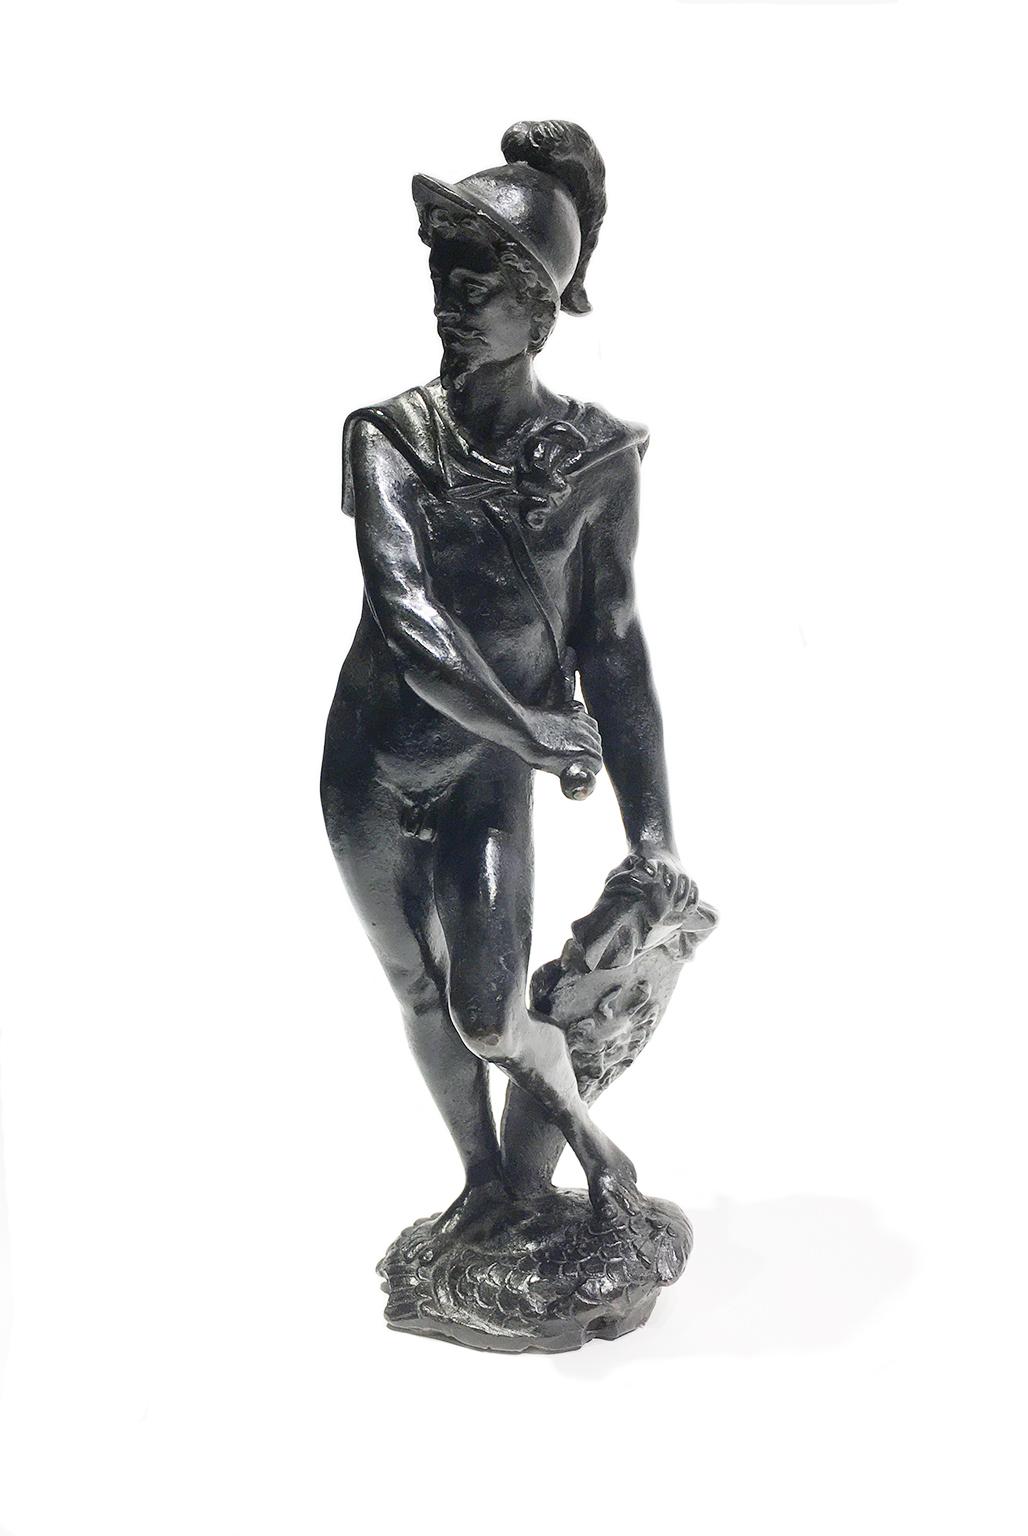 Perseus (oder Mars?)
Padua, erste Hälfte des 17. Jahrhunderts
anhänger von Tiziano Aspetti (Padua, 1559 - Pisa, 1607)
bronze mit dunkler Patina
Erhaltungszustand: Die dunkle Patina, mit der sie überzogen ist, weist einige Lücken und Kratzer